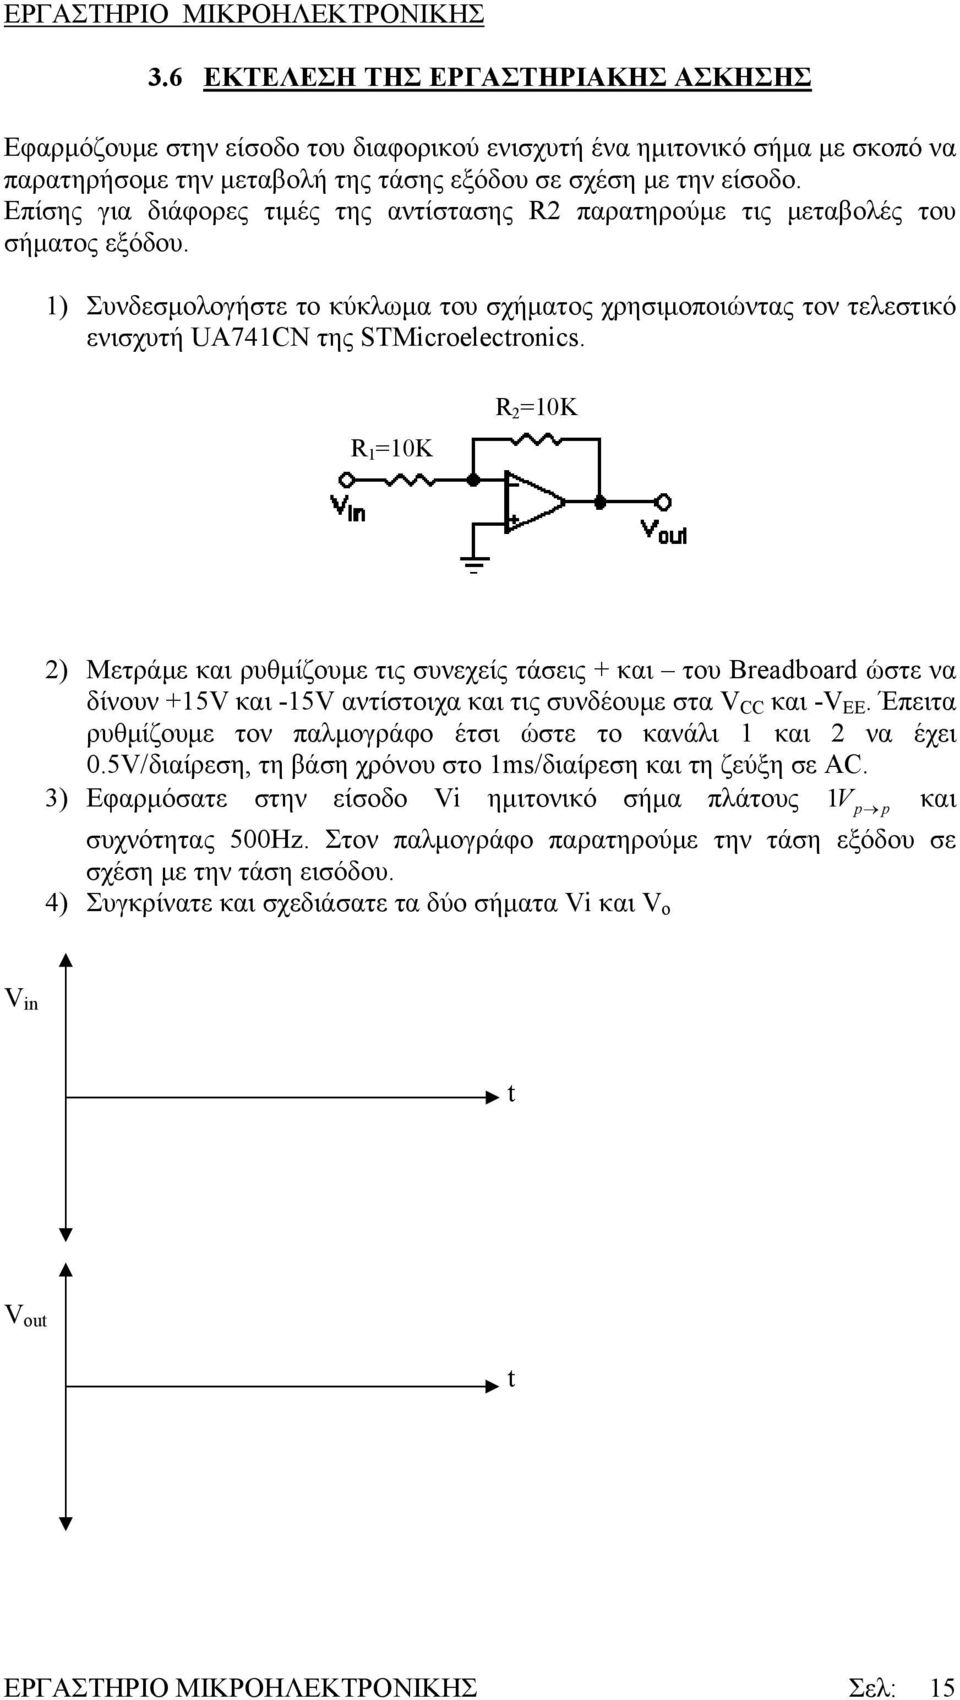 1) Συνδεσμολογήστε το κύκλωμα του σχήματος χρησιμοποιώντας τον τελεστικό ενισχυτή UA741CN της STMicroelectronics.